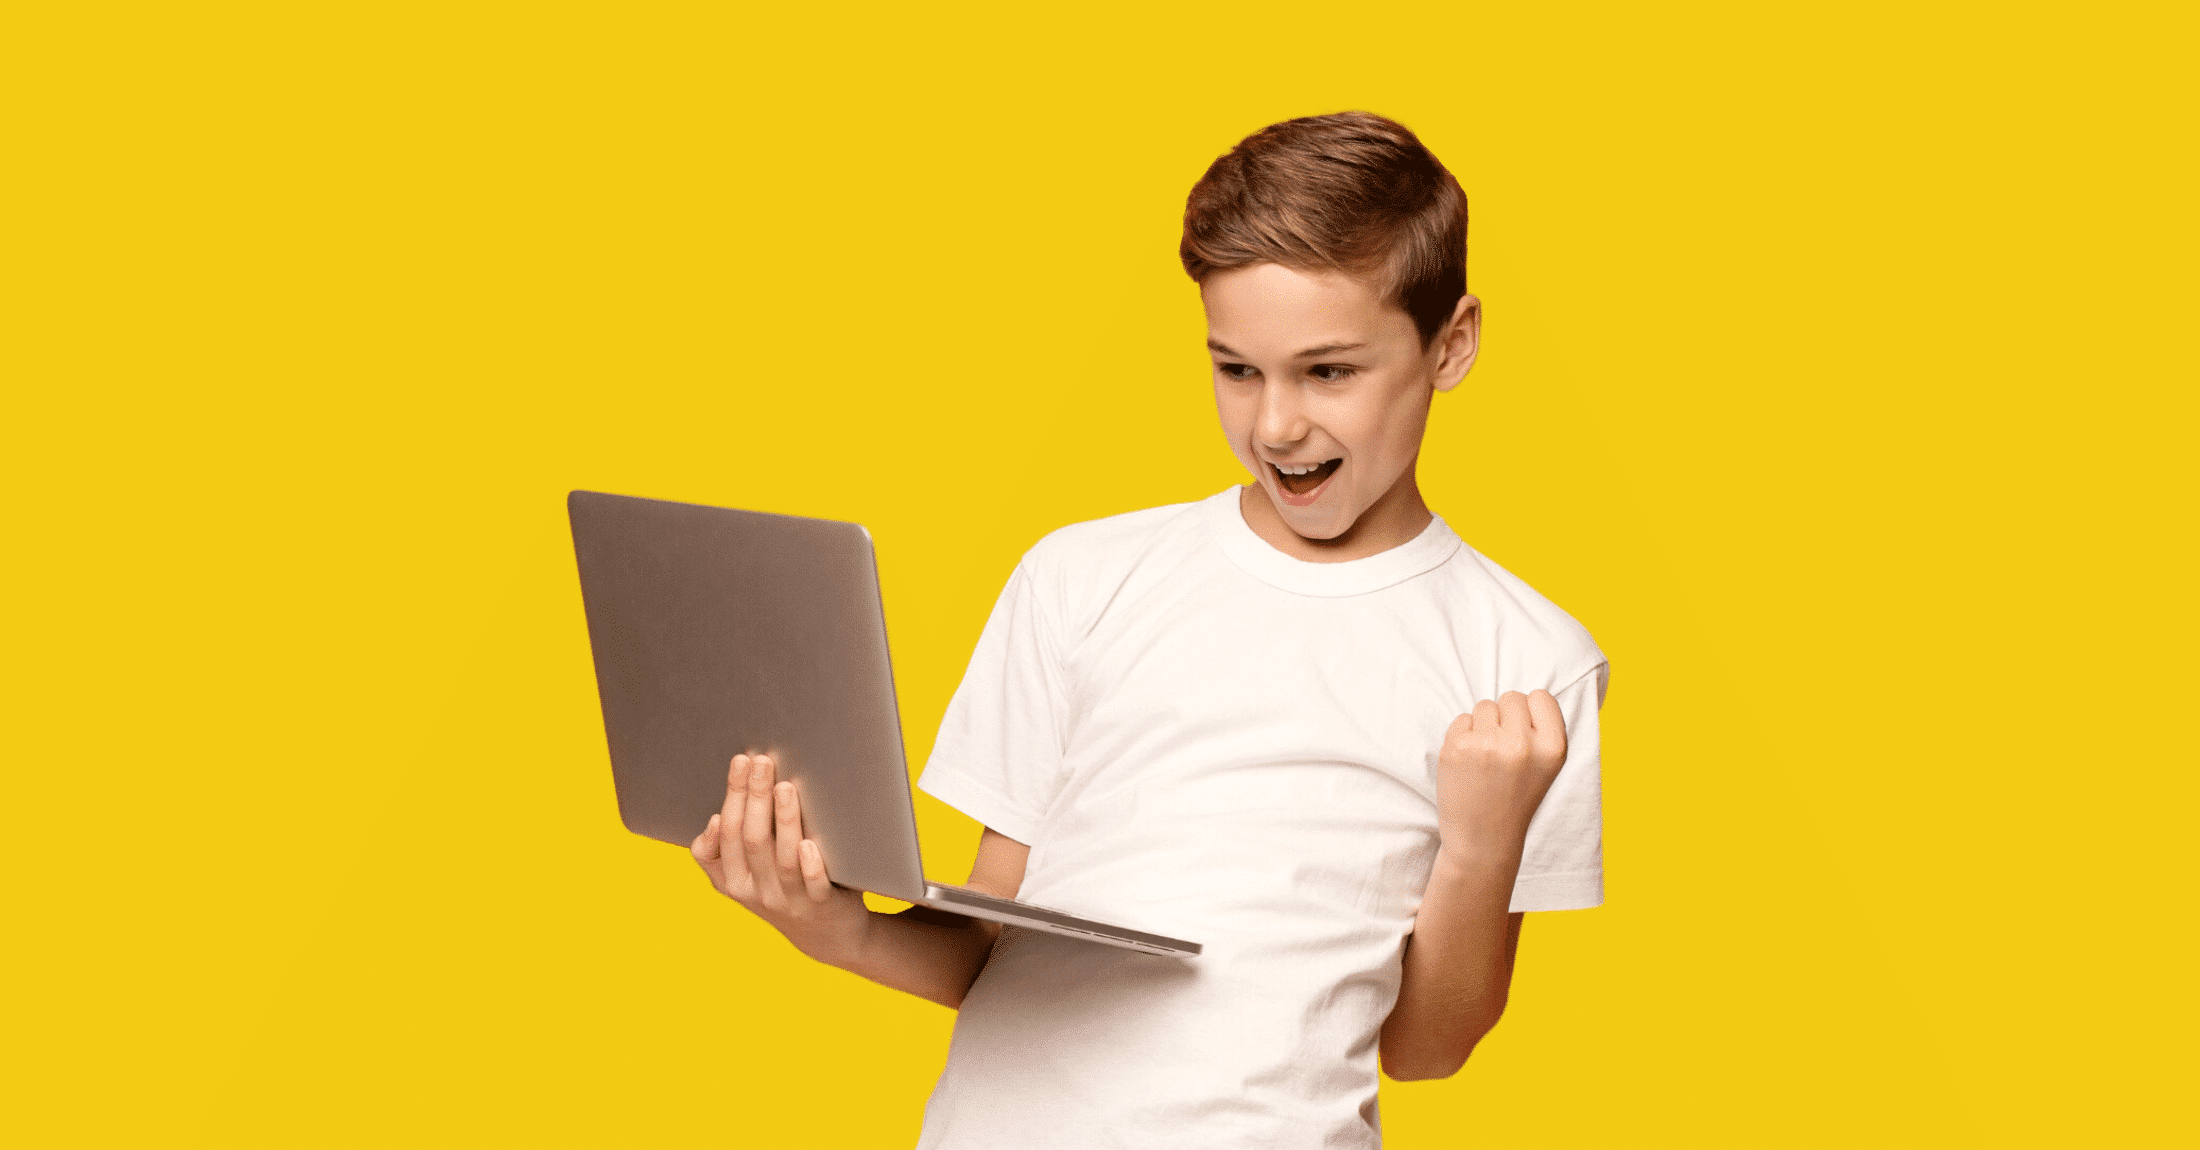 Poika läppäri sylissä hymyilee onnistumistaan. TueTiimiä.fi varainhankinta tarjoaa nuorille onnistumisen kokemuksia ja nostaa nuorten itseluottamusta.